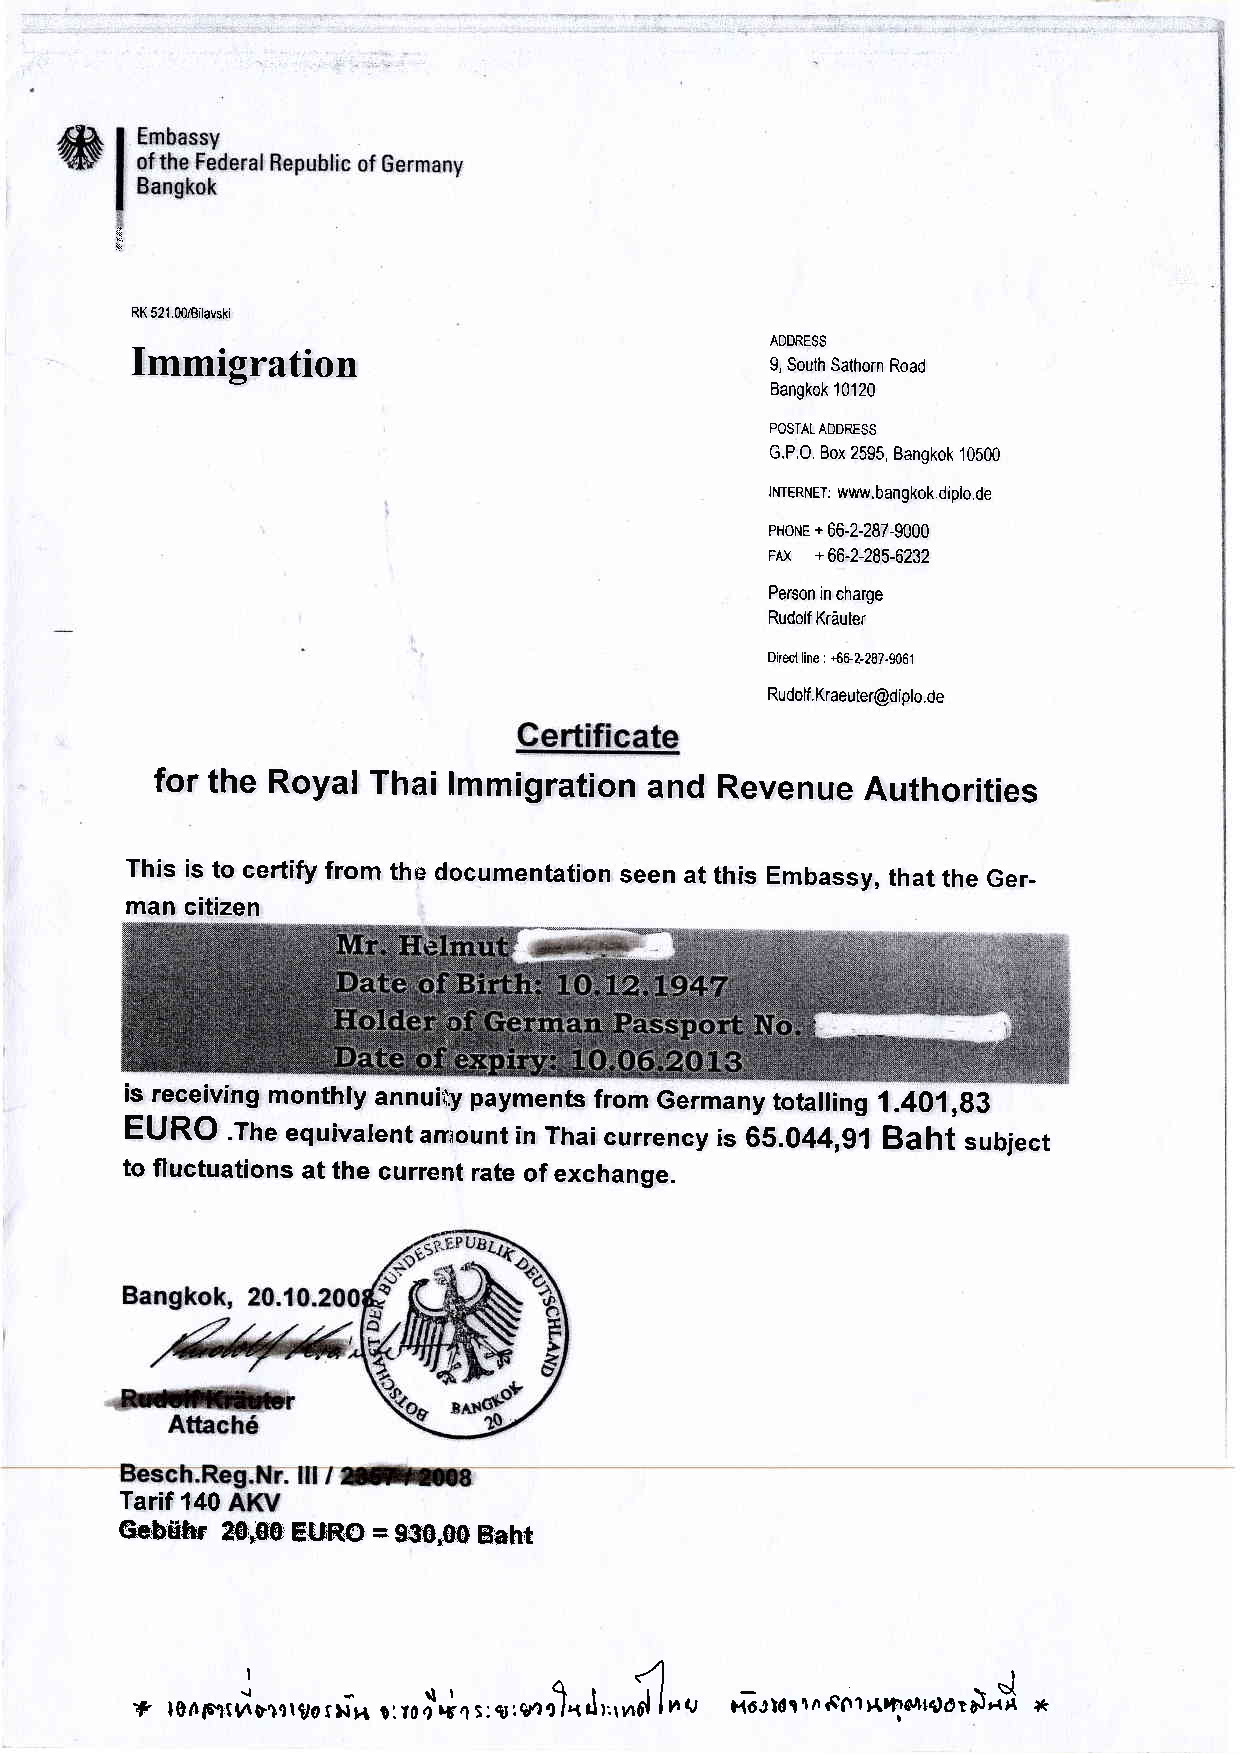 ตัวอย่างเอกสารการต่อวีซ่าคนเยอรมันในประเทศไทย